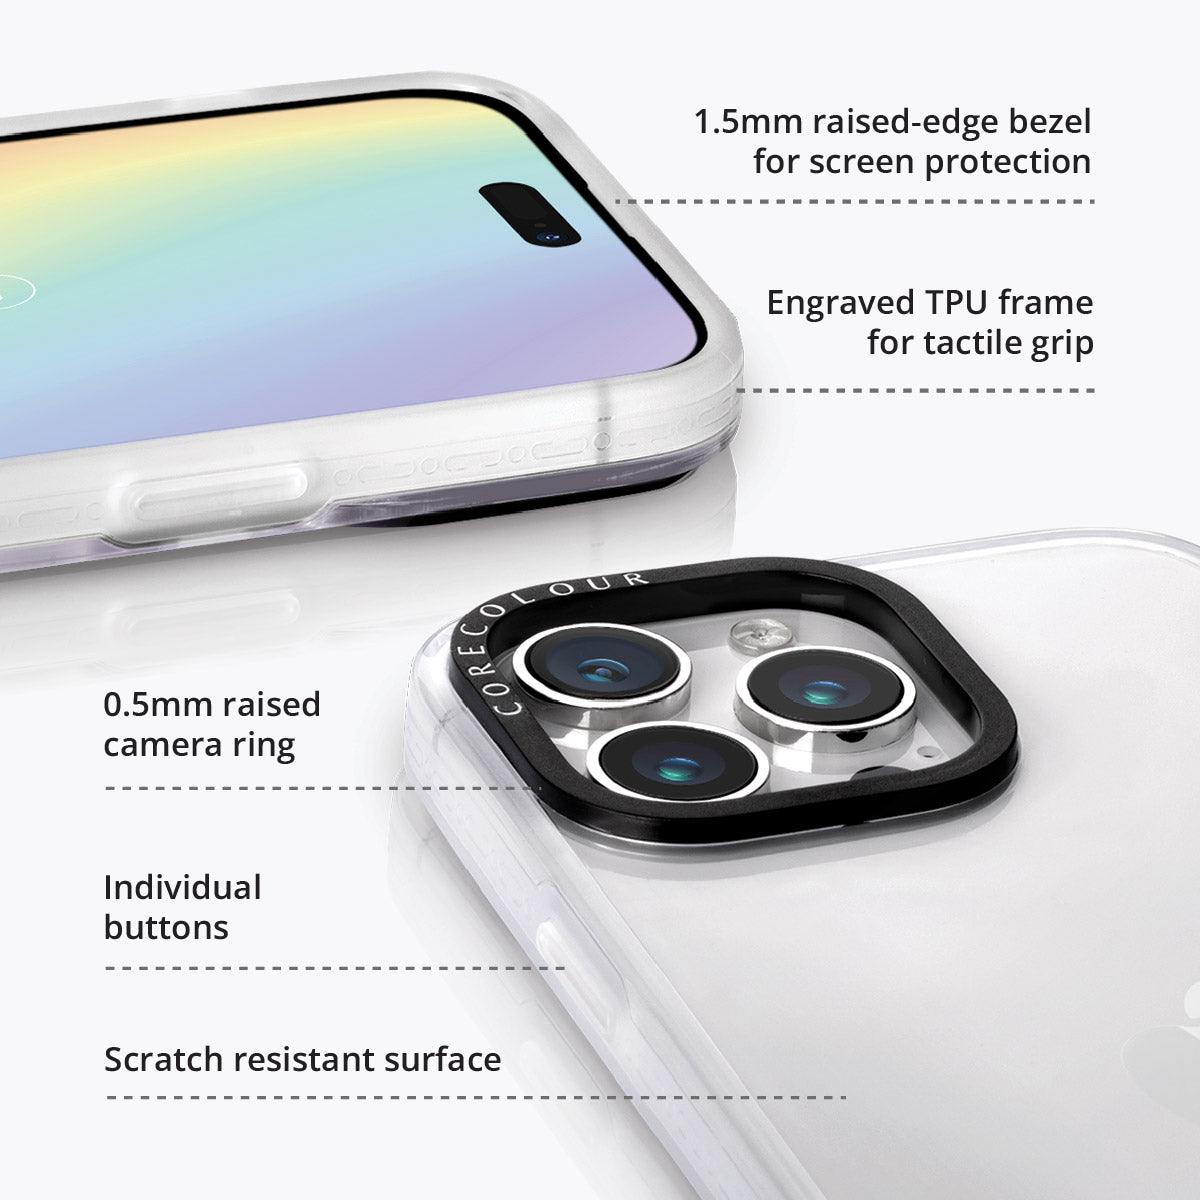 iPhone 13 Pro Max Cosmic Canvas Phone Case - CORECOLOUR AU